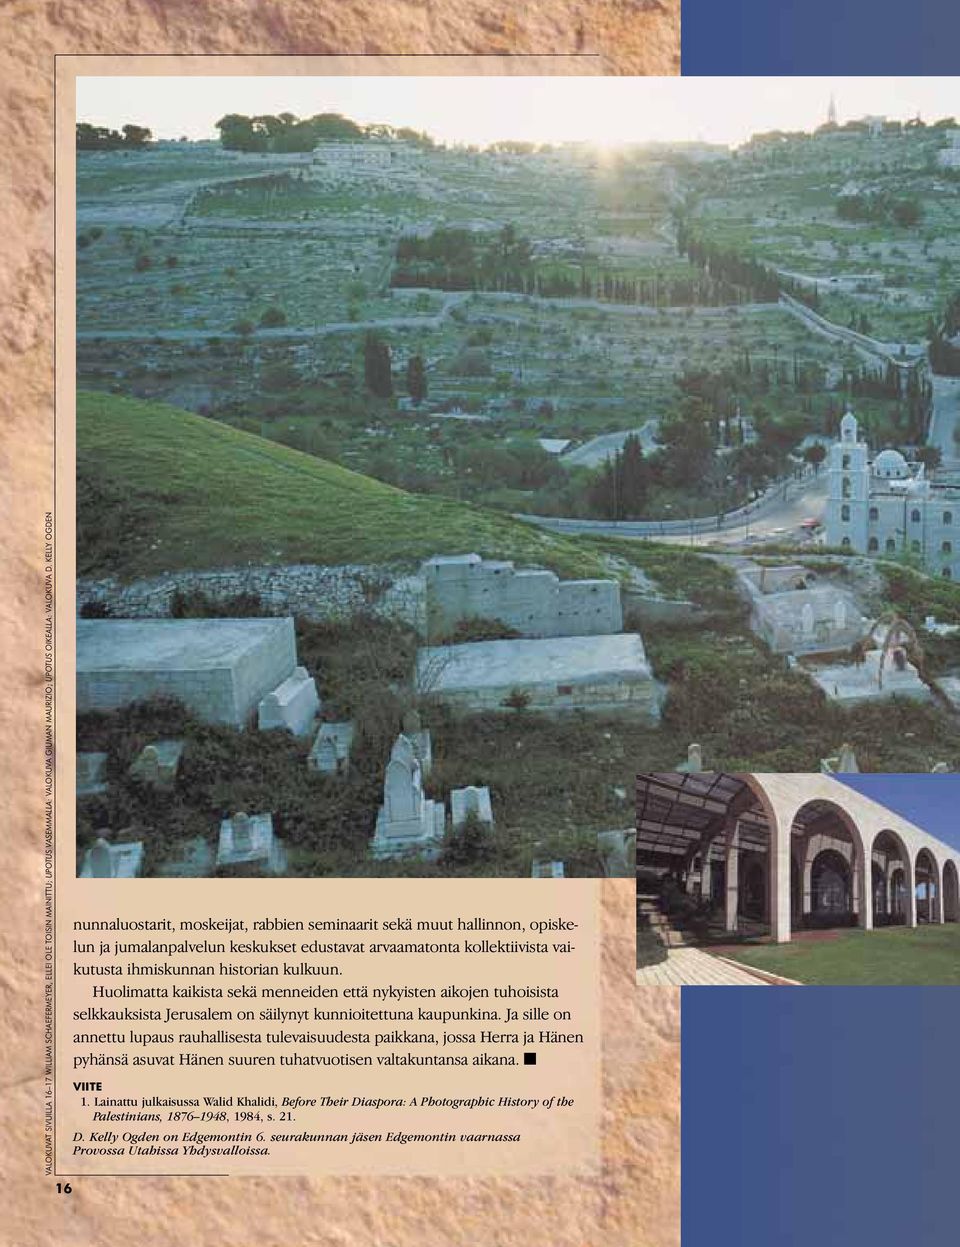 Huolimatta kaikista sekä menneiden että nykyisten aikojen tuhoisista selkkauksista Jerusalem on säilynyt kunnioitettuna kaupunkina.